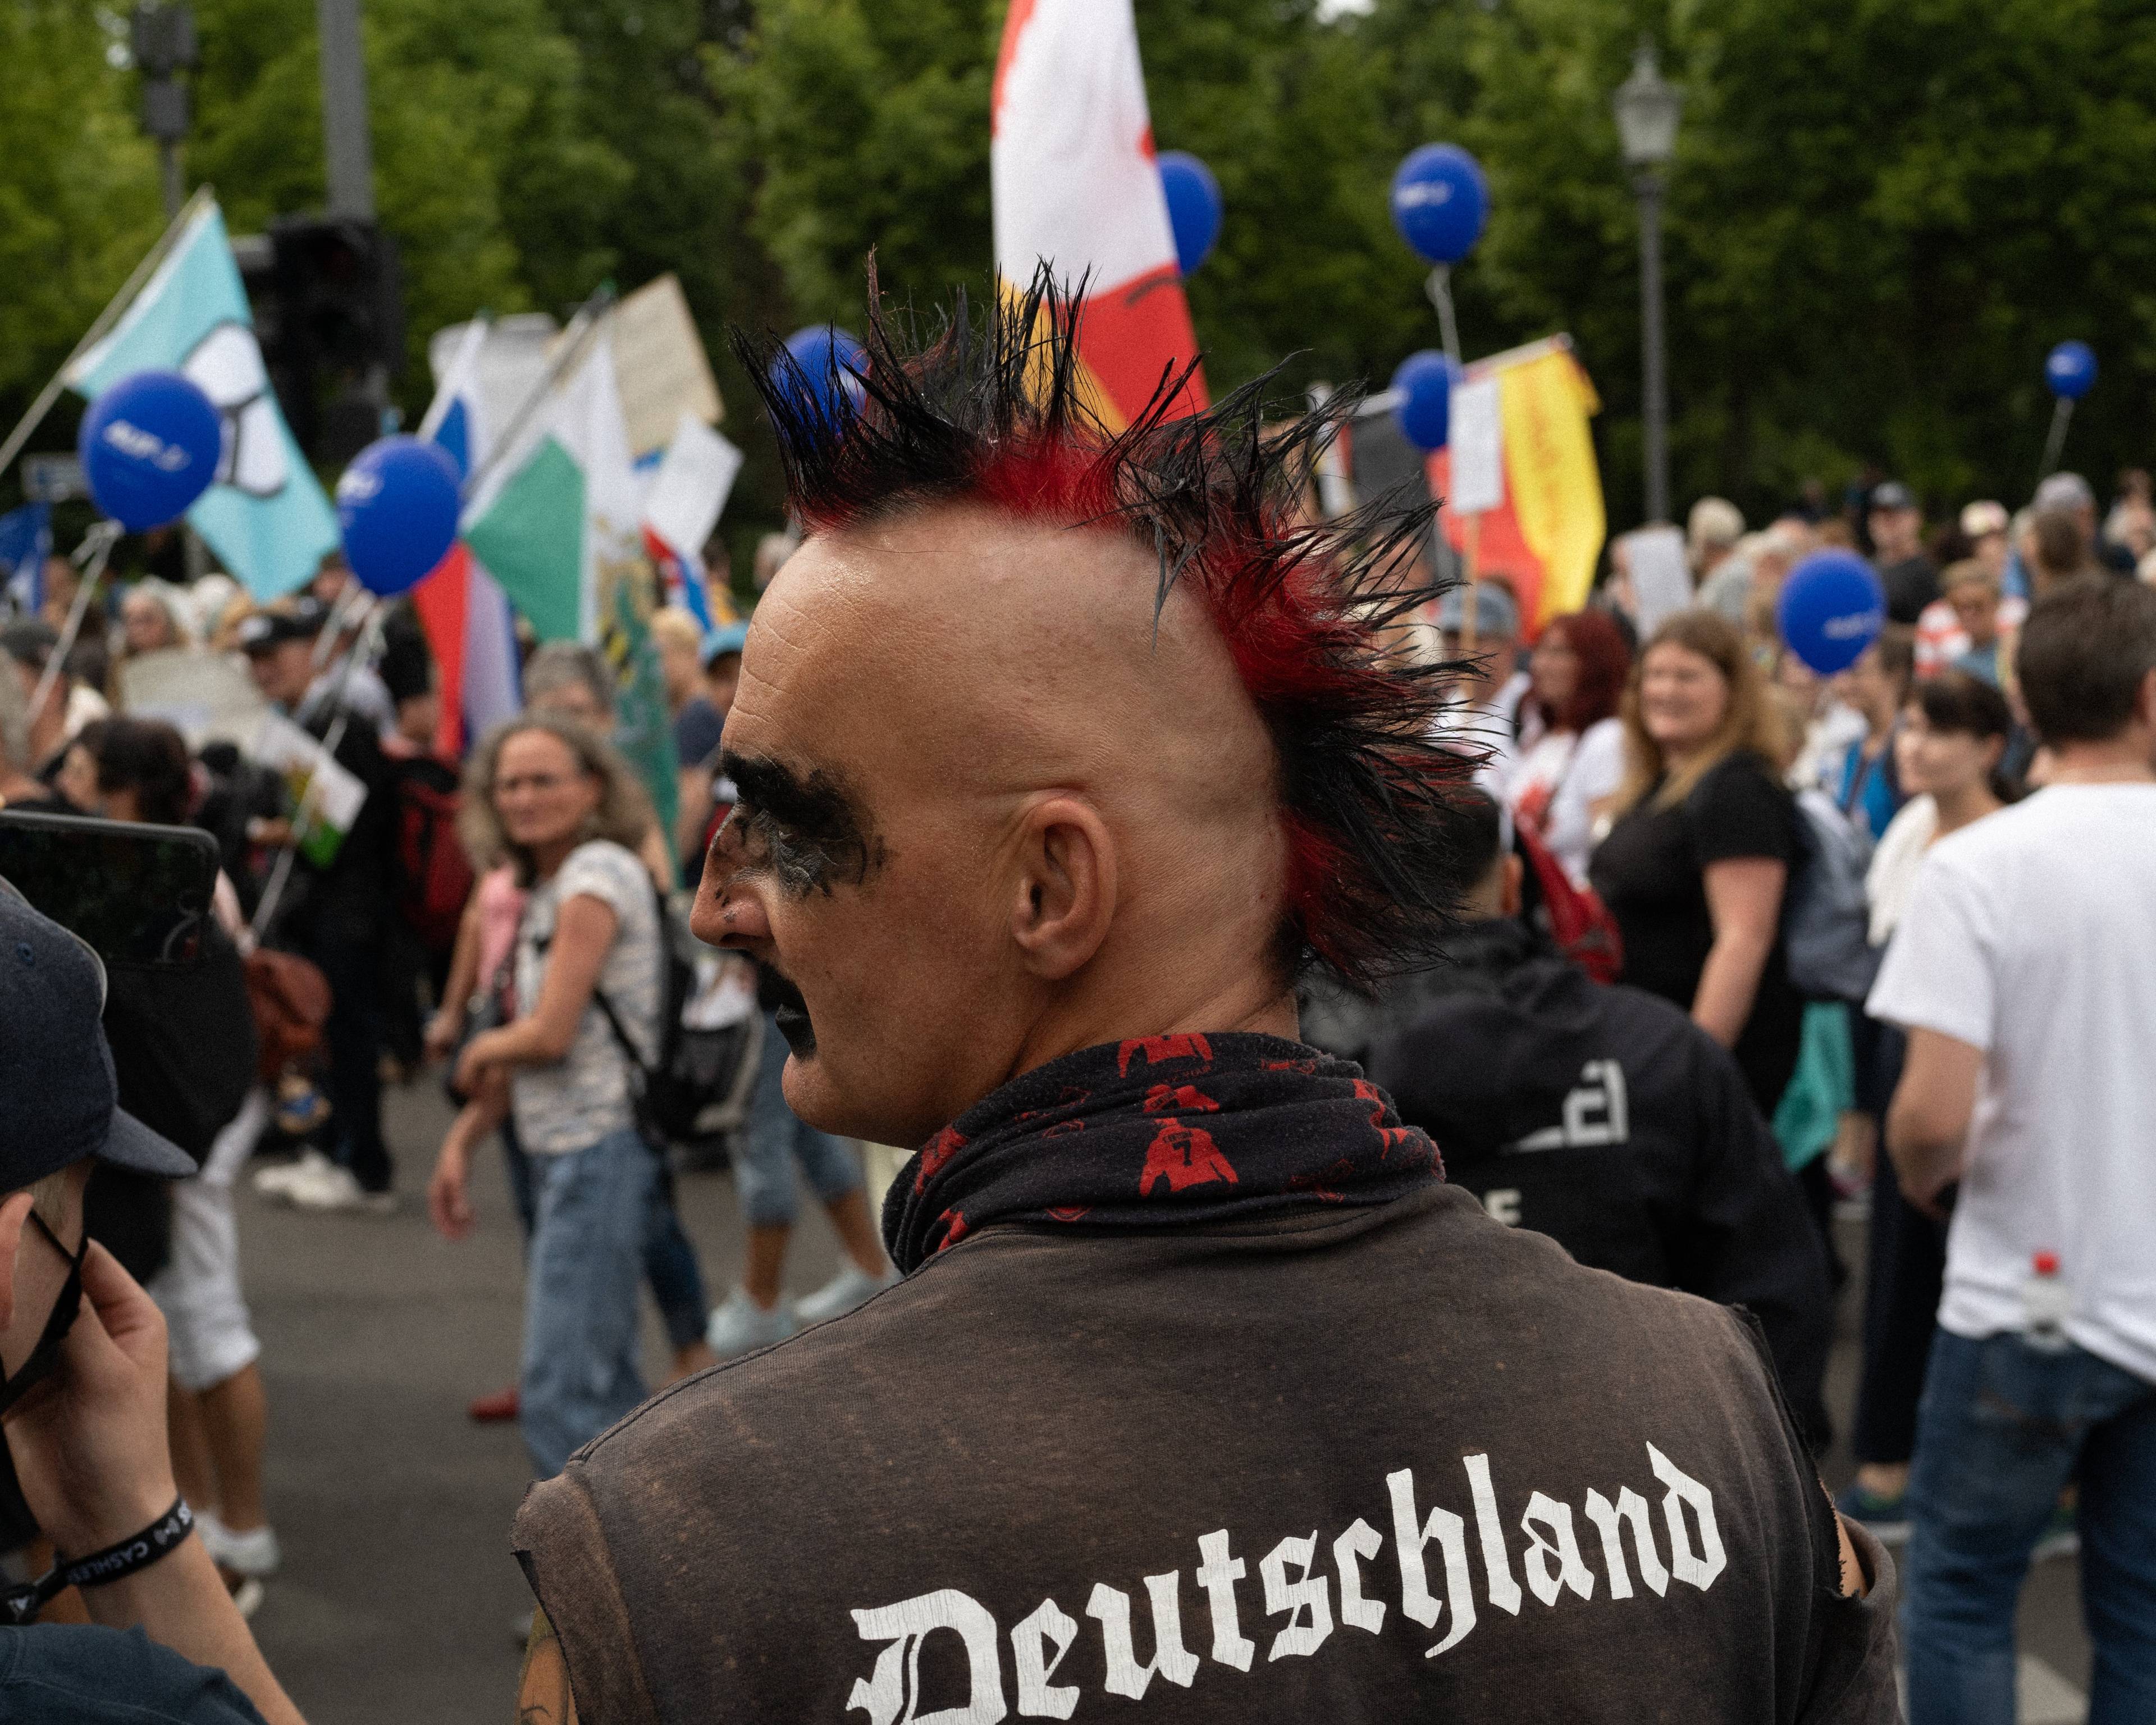 Mężczyzna z kolorowym irokezem na wygolonej głowie i napisem na plecach "Deutschland"